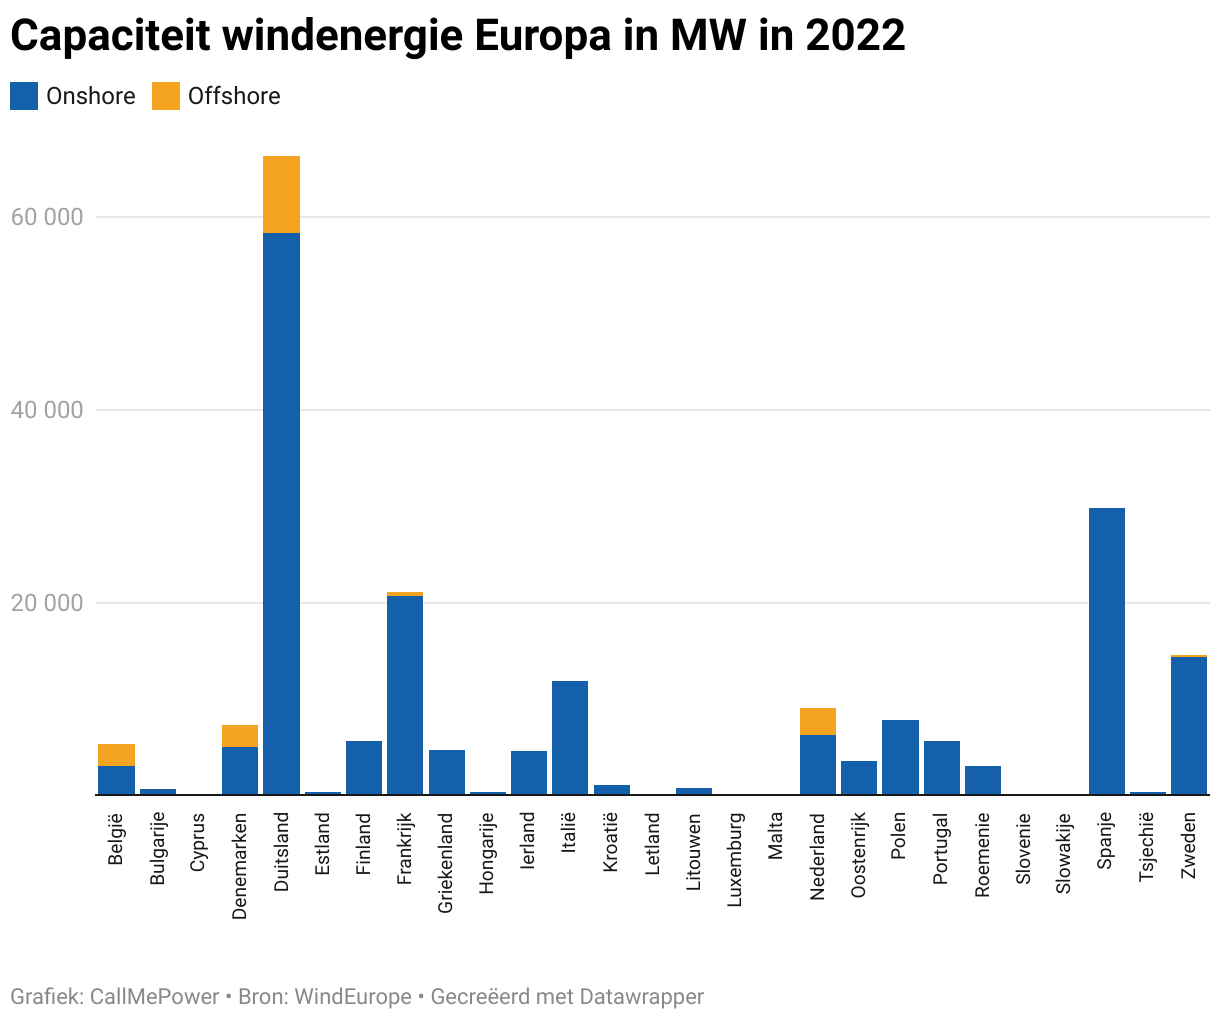 Grafiek met vermogen windenergie in mw per land in Europa